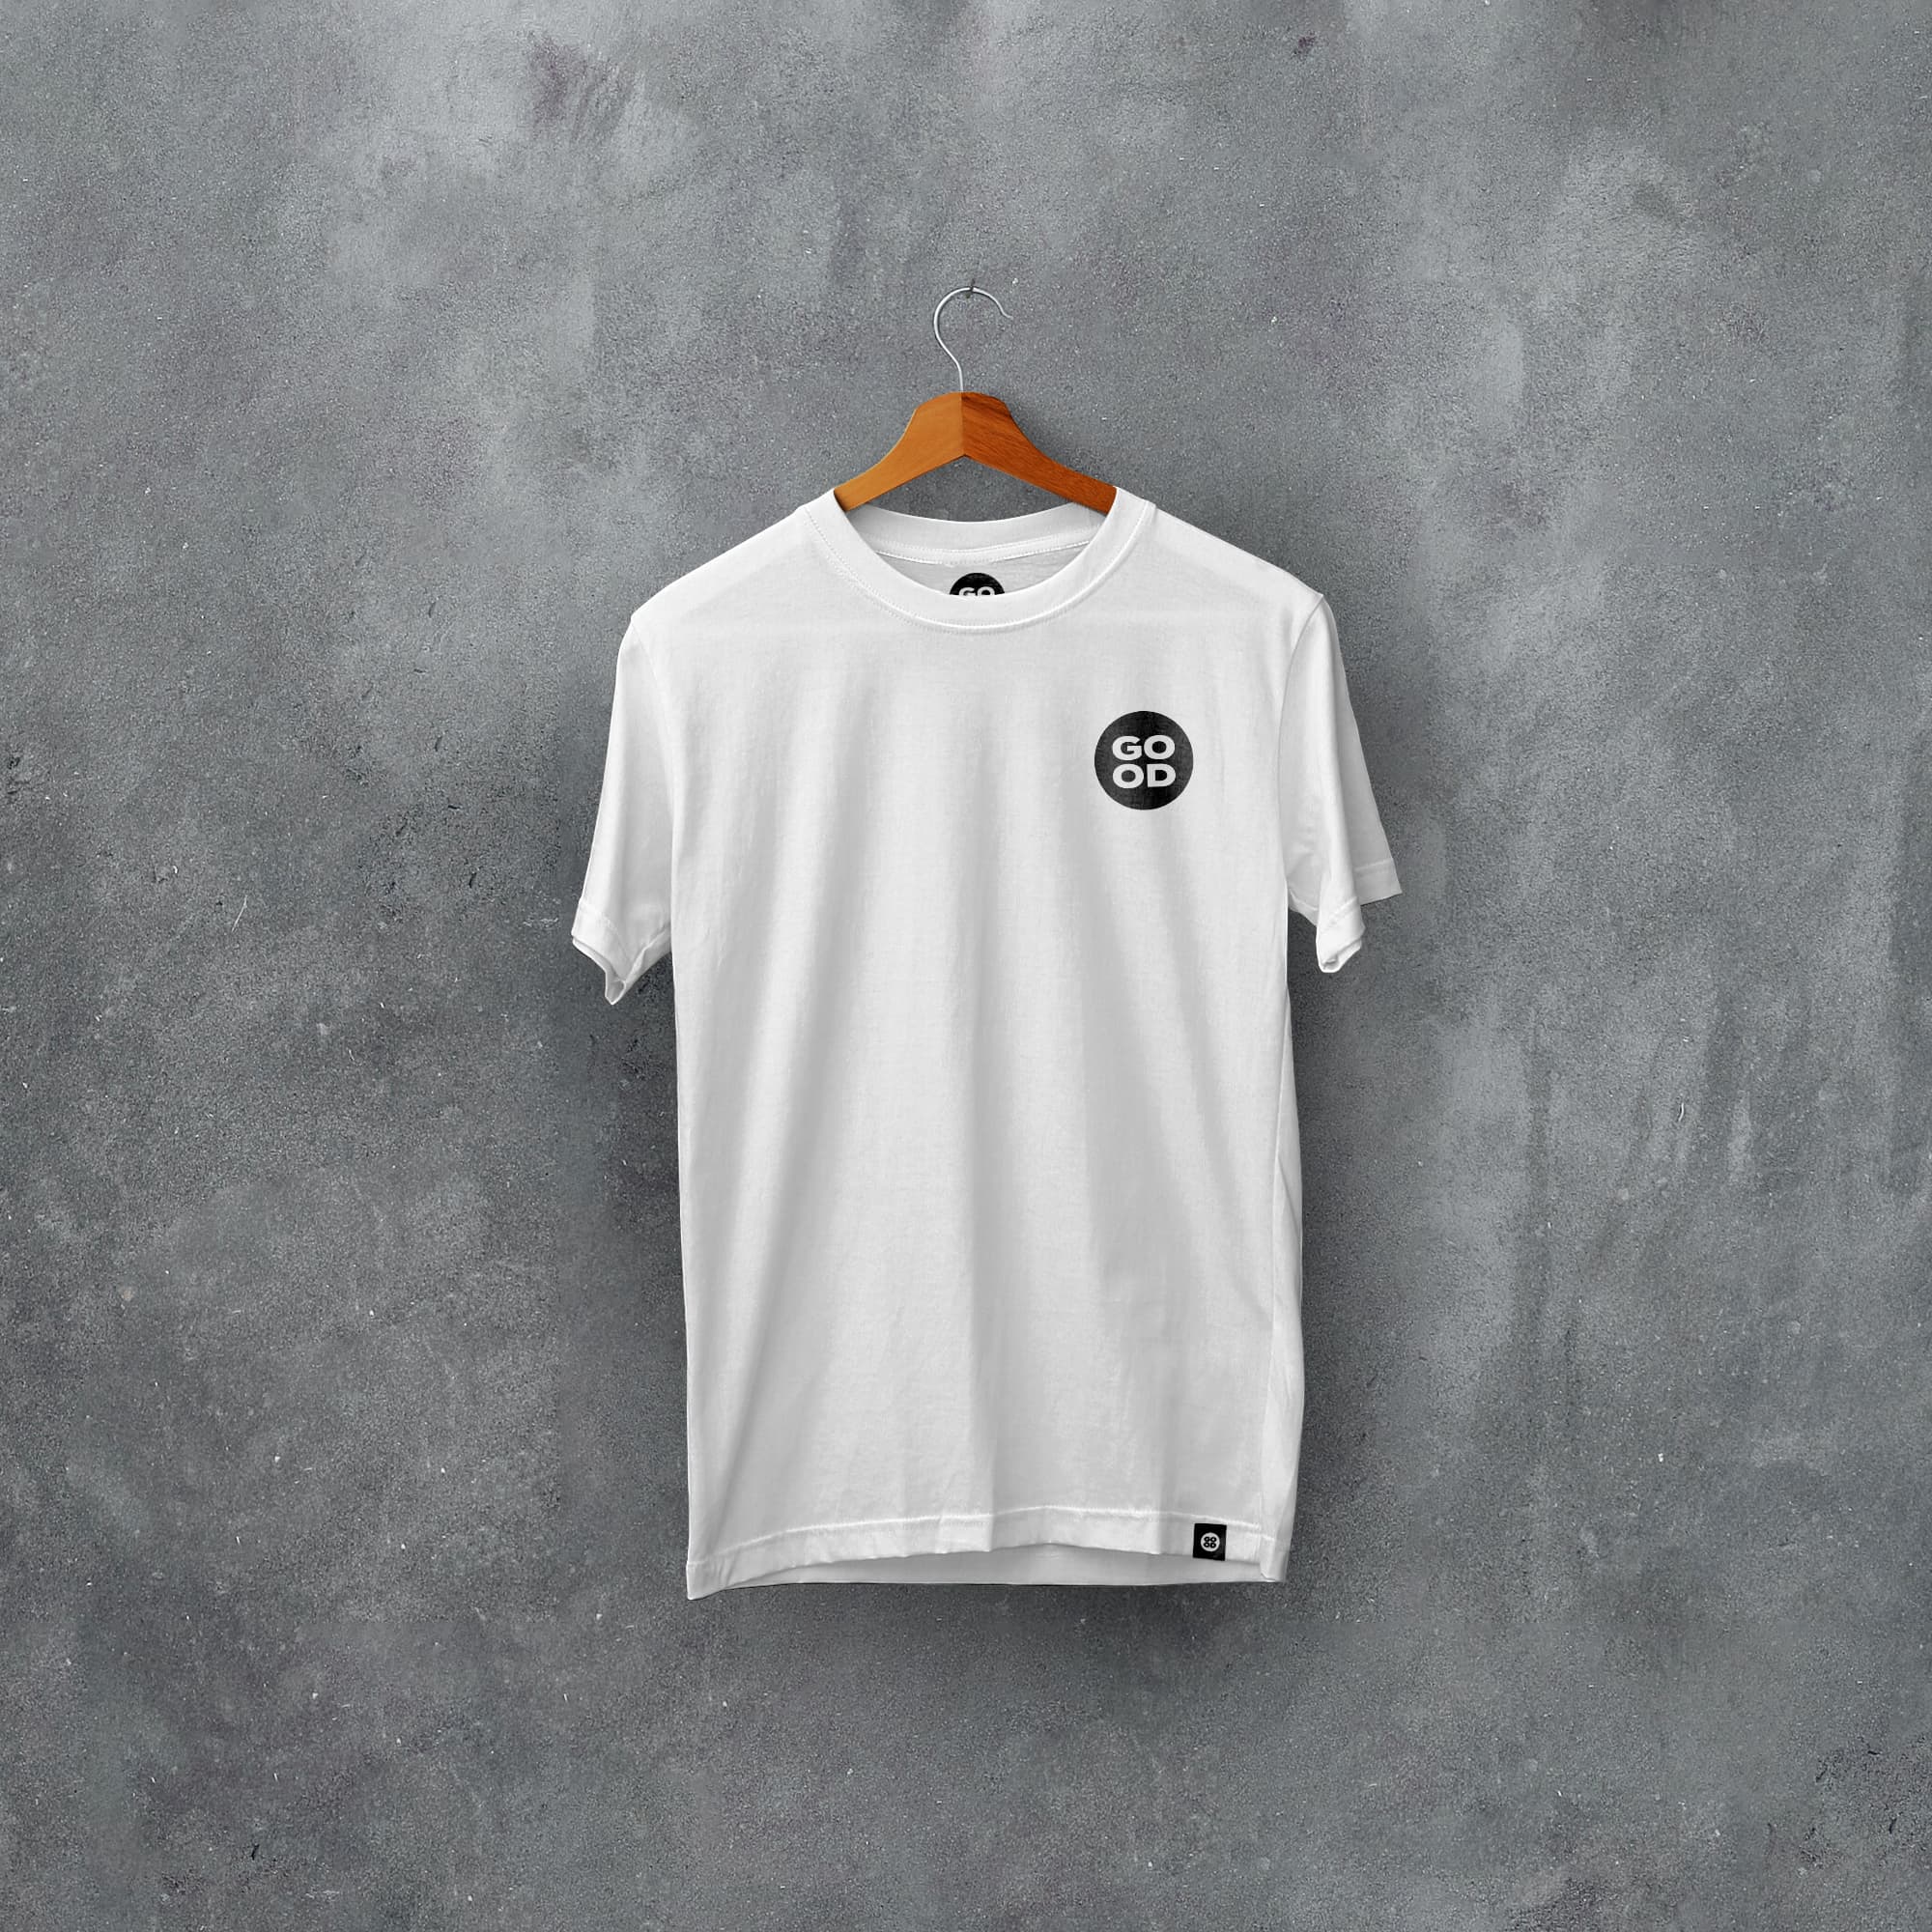 Macclesfield Classic Kits Football T-Shirt